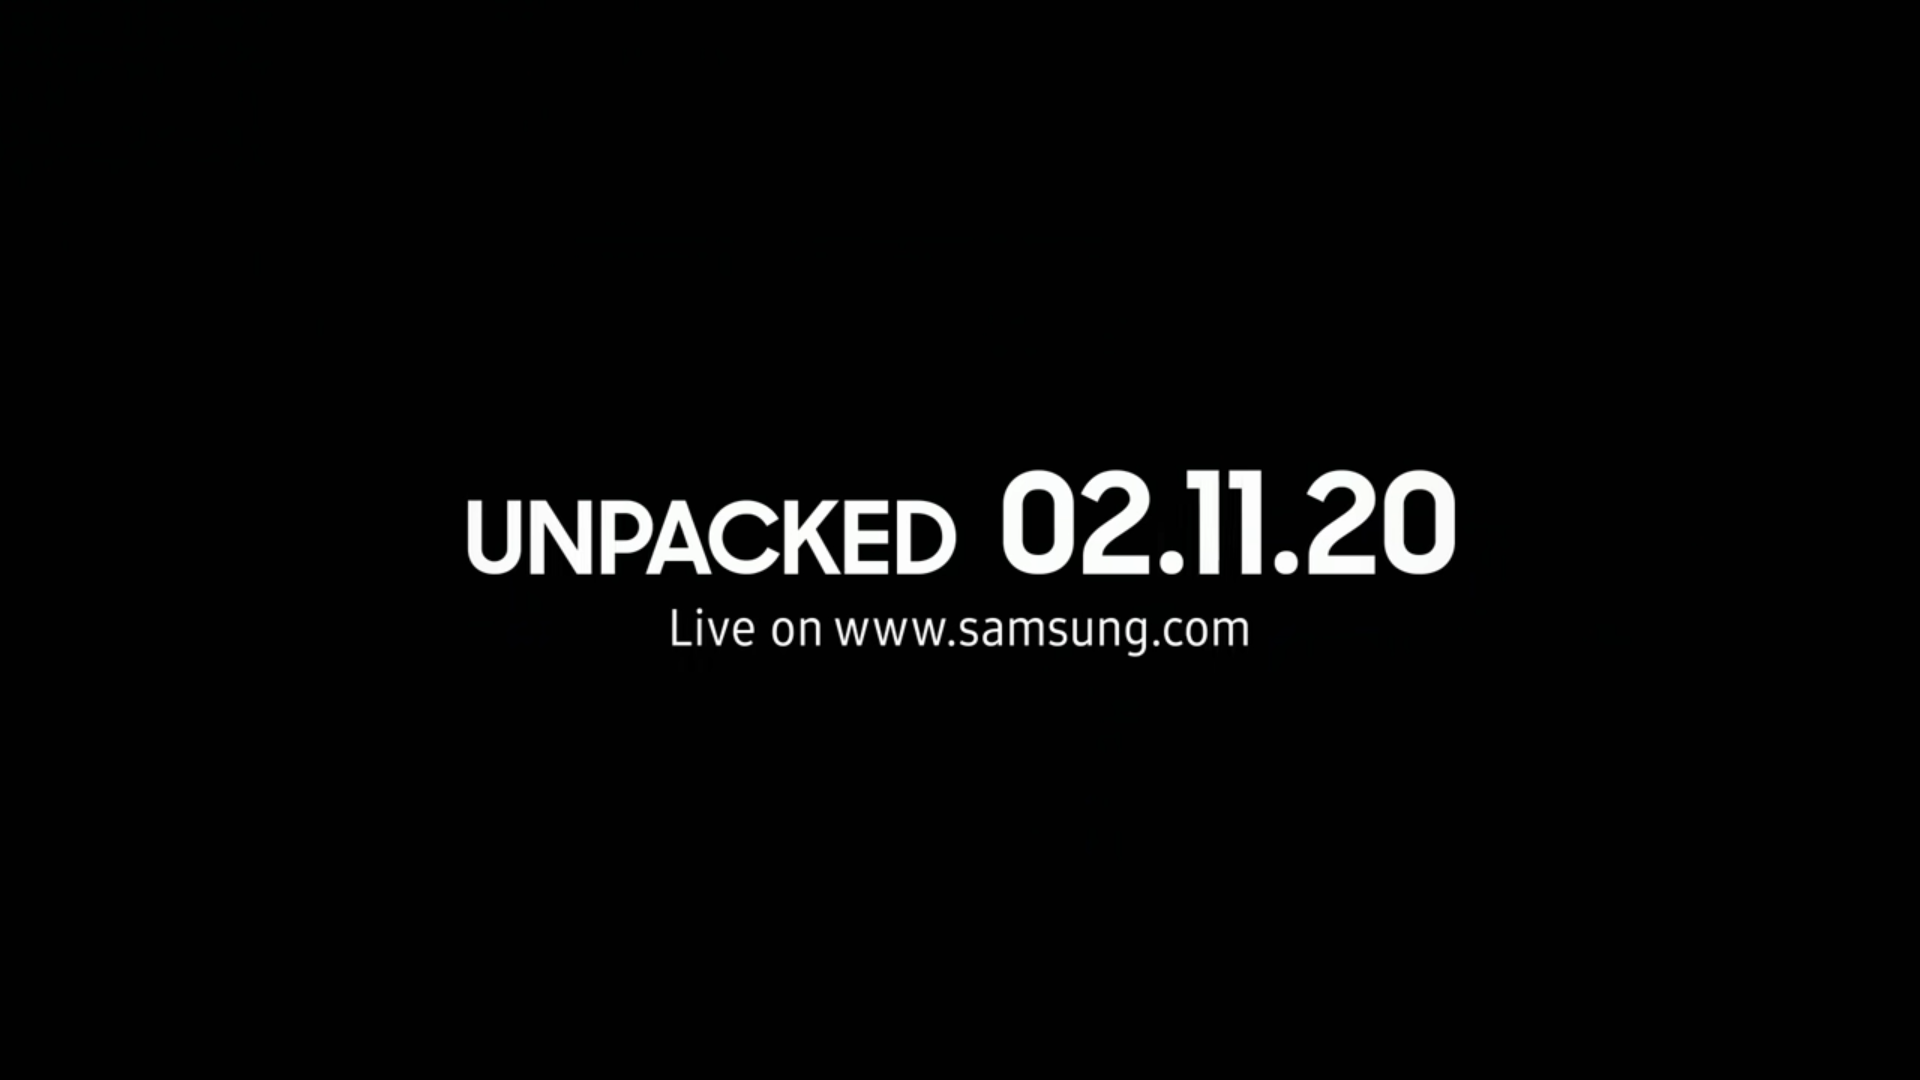 Samsung tung video teaser dài hơn, sẵn sàng cho sự kiện lớn Unpacked 2020 sắp tới